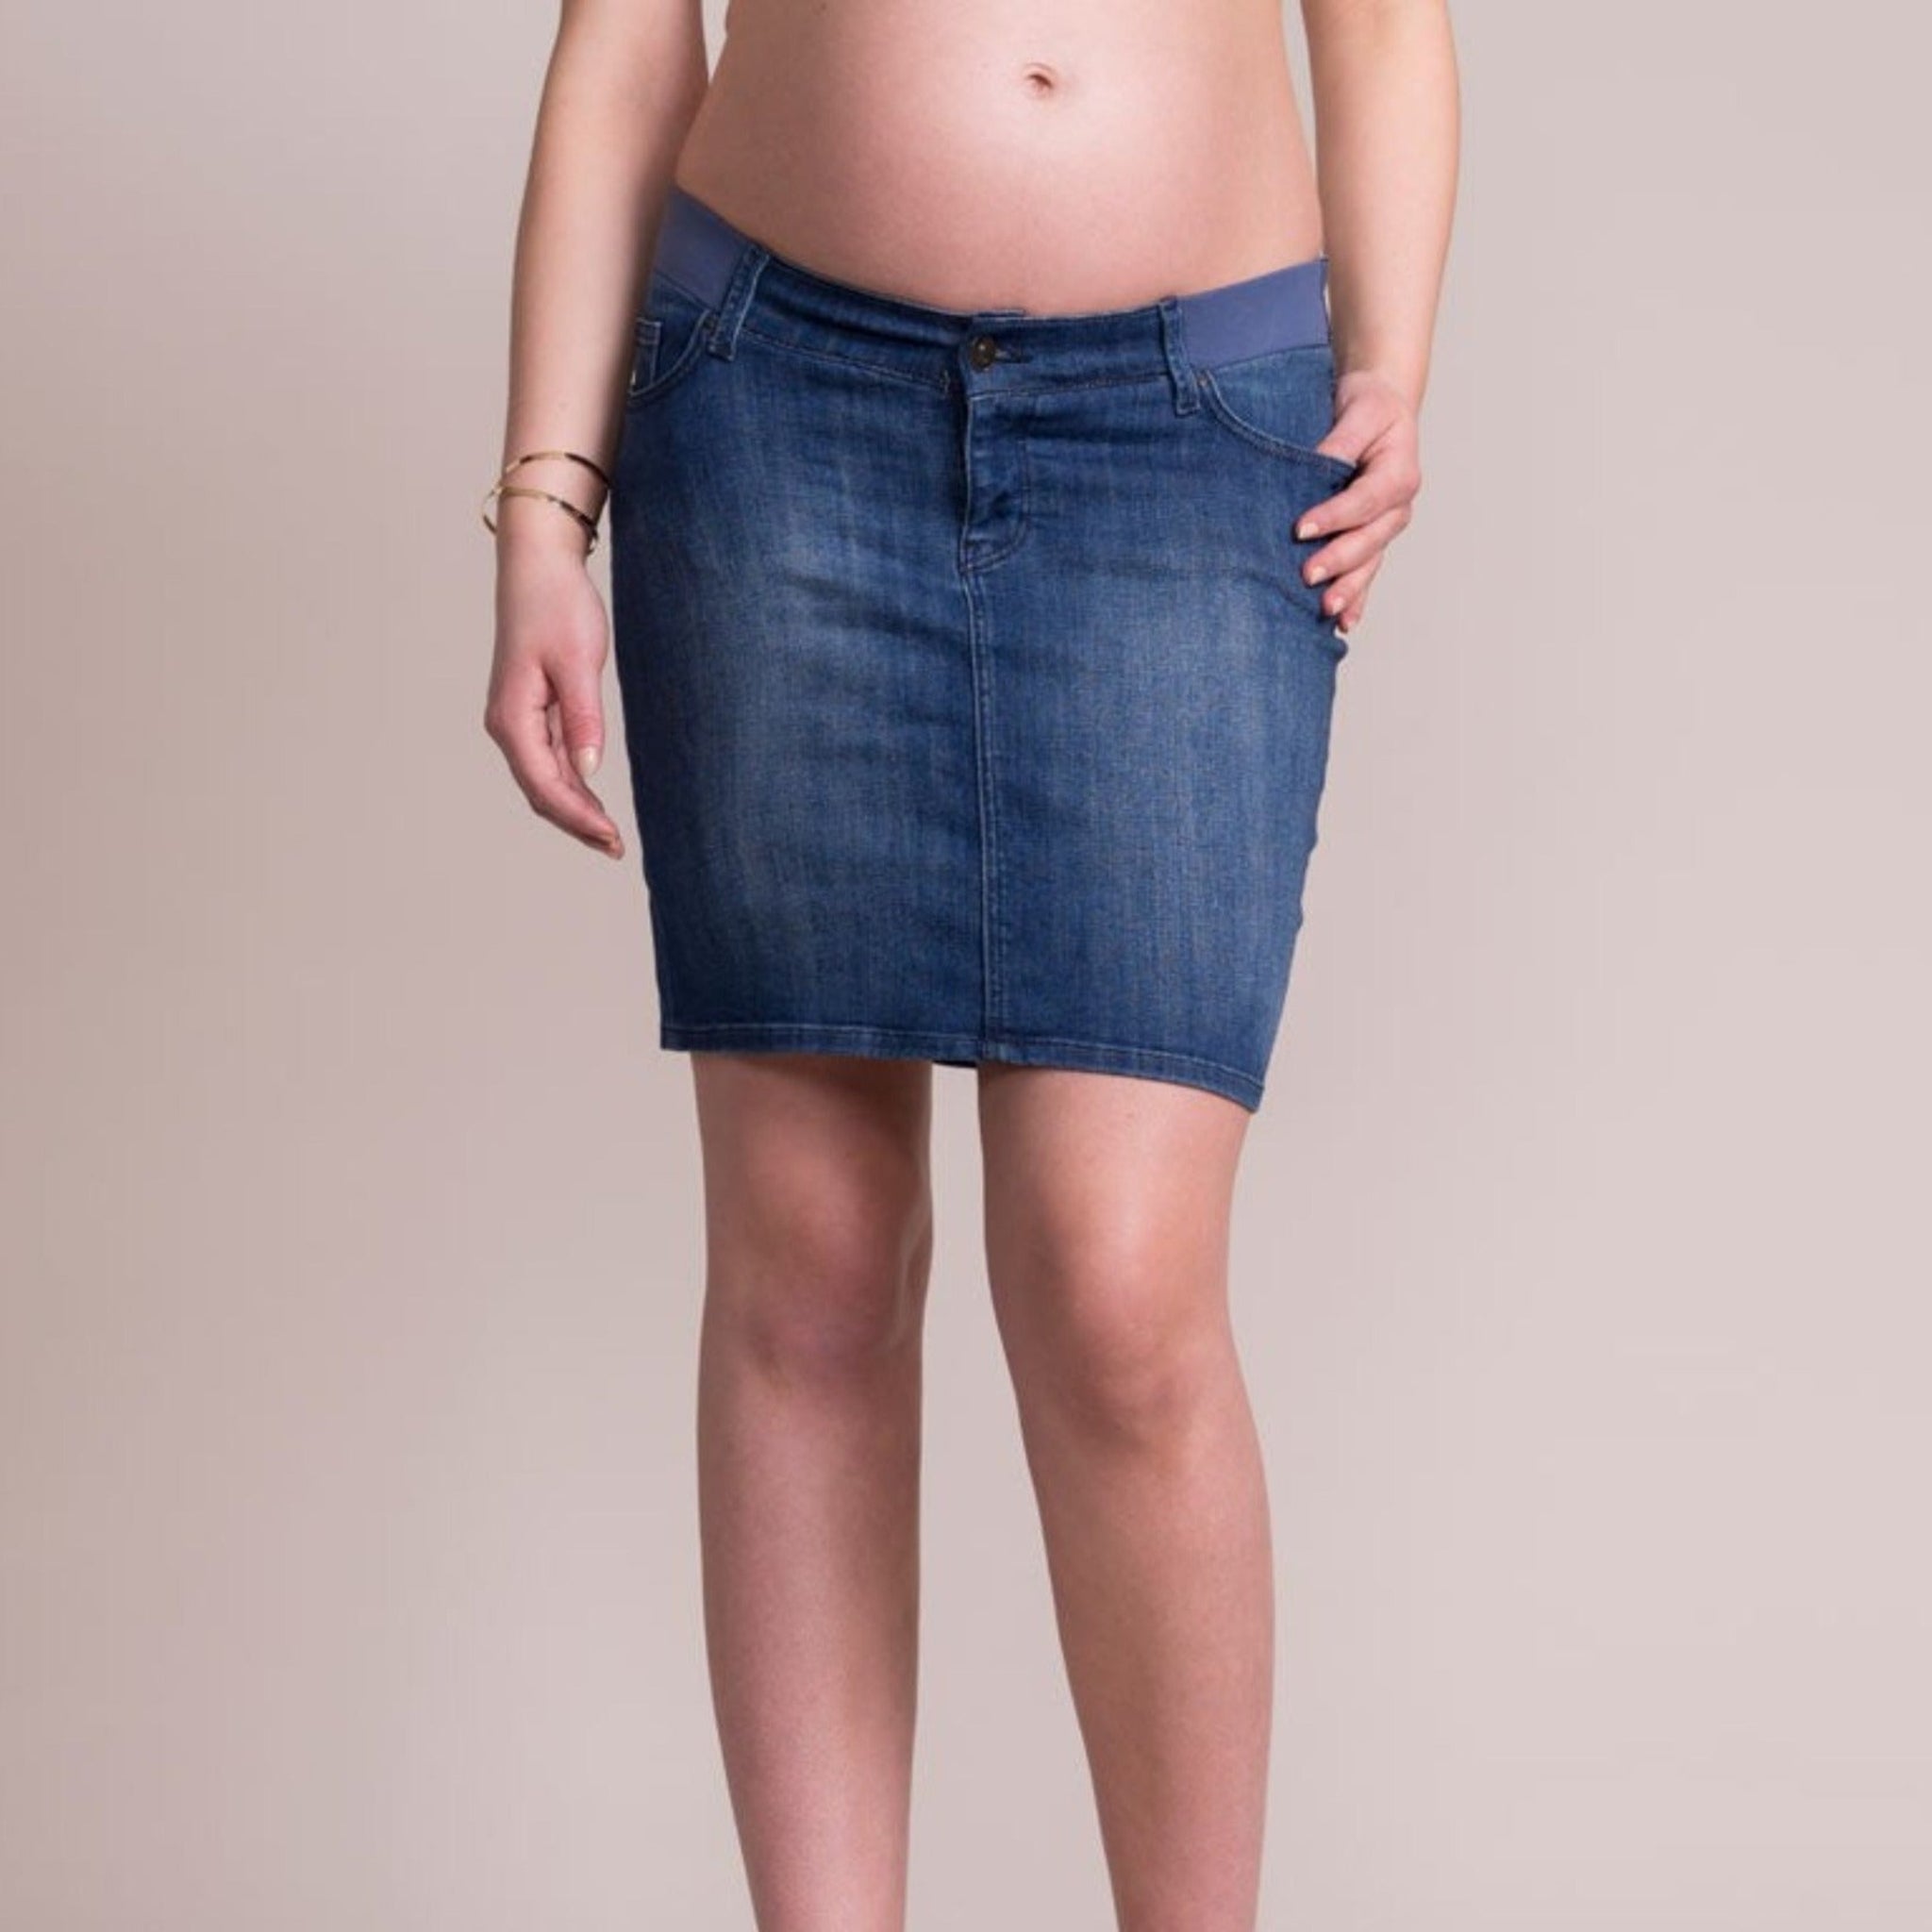 Falda de jean oscuro por debajo de la barriga - 9lunasshop.com